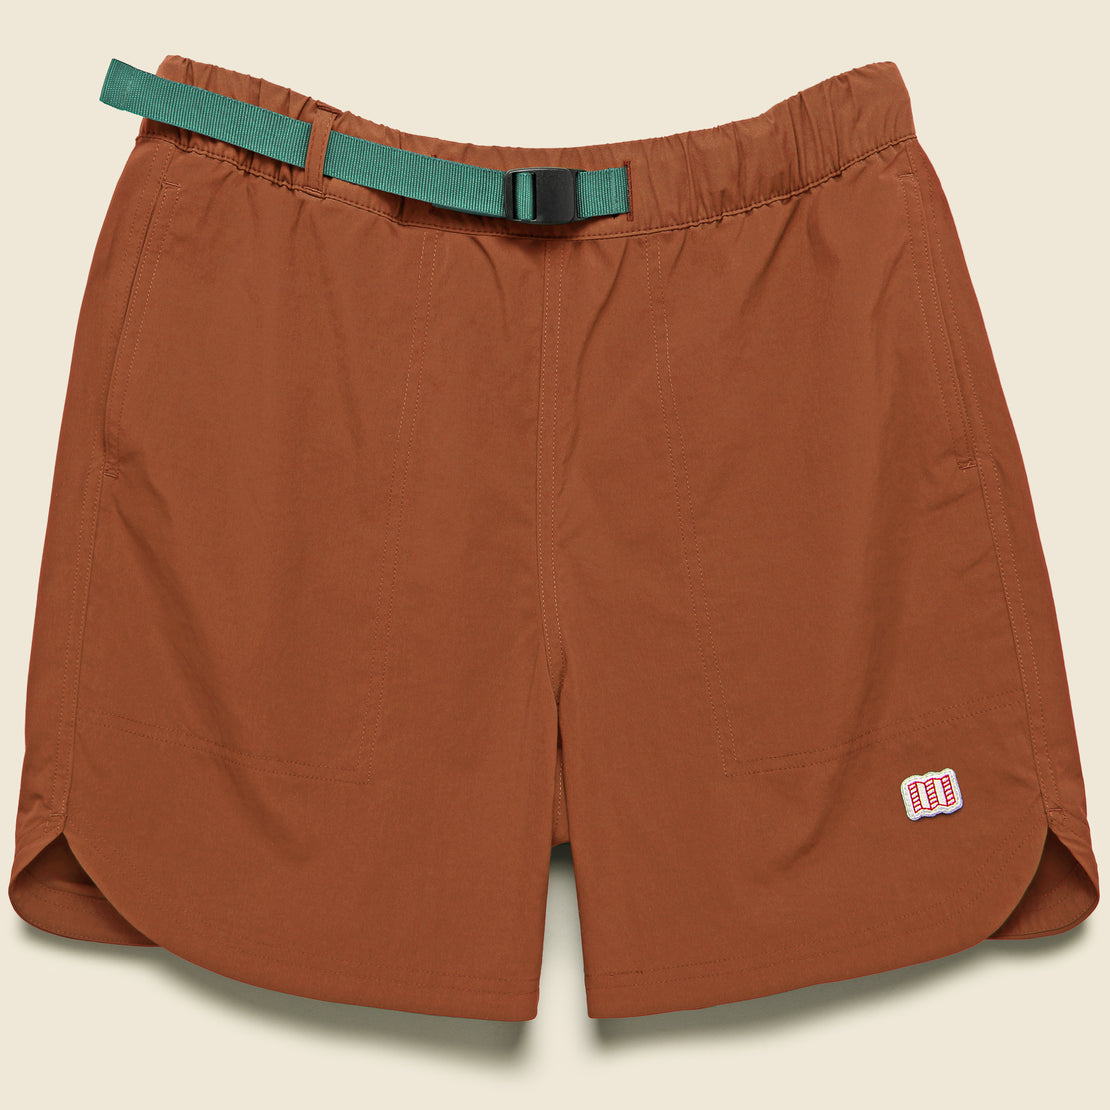 Topo Designs River Shorts - Brick